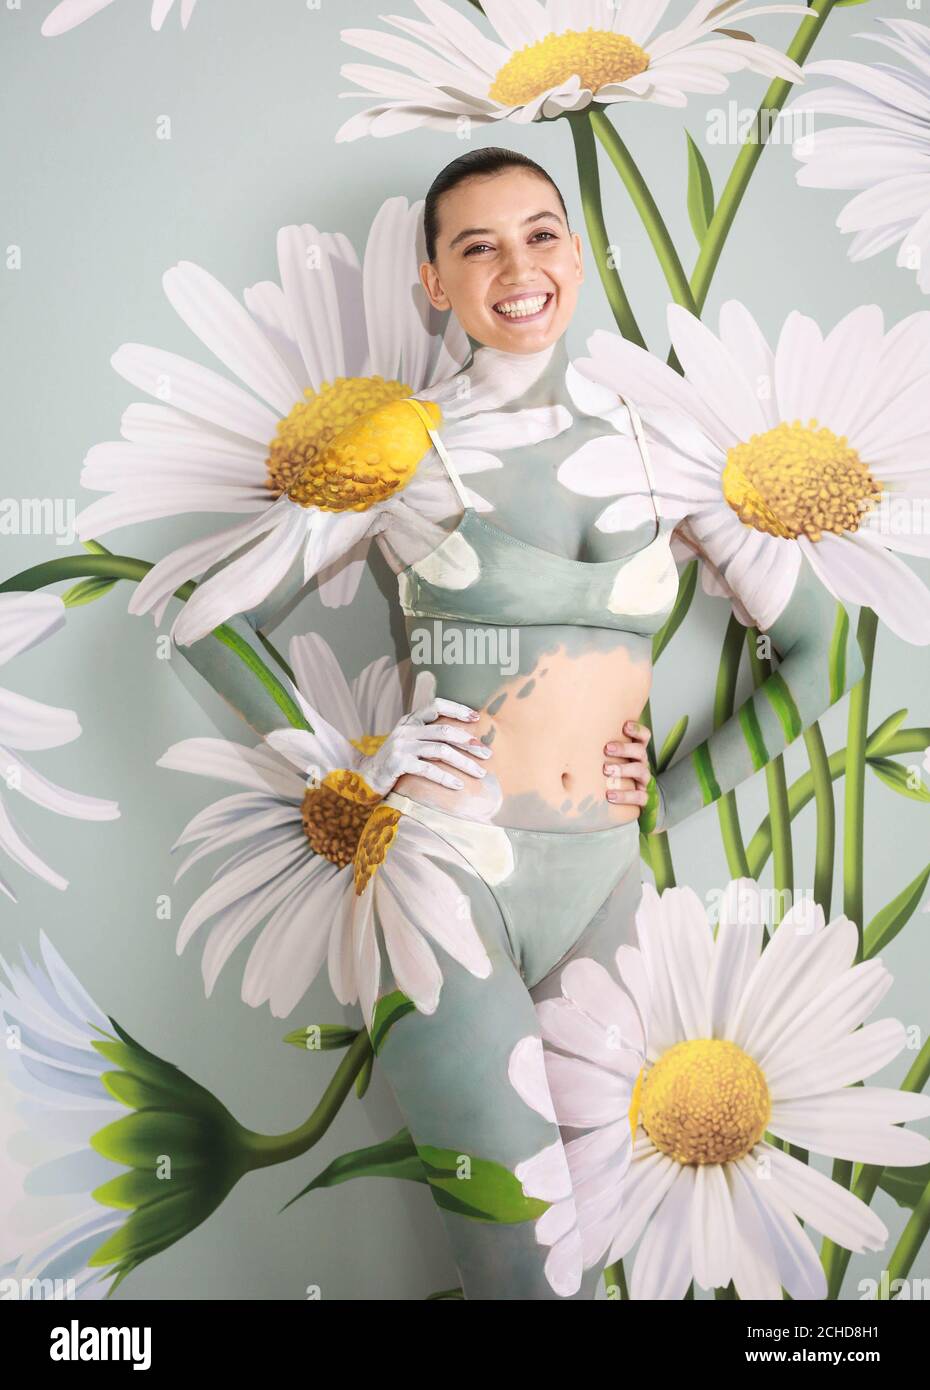 Daisy Lowe ha sido camuflado en una pared de margaritas por la artista líder mundial de pintura corporal Carolyn Roper, para mostrar la función de modo ambiental del televisor Samsung QLED. El Foto de stock